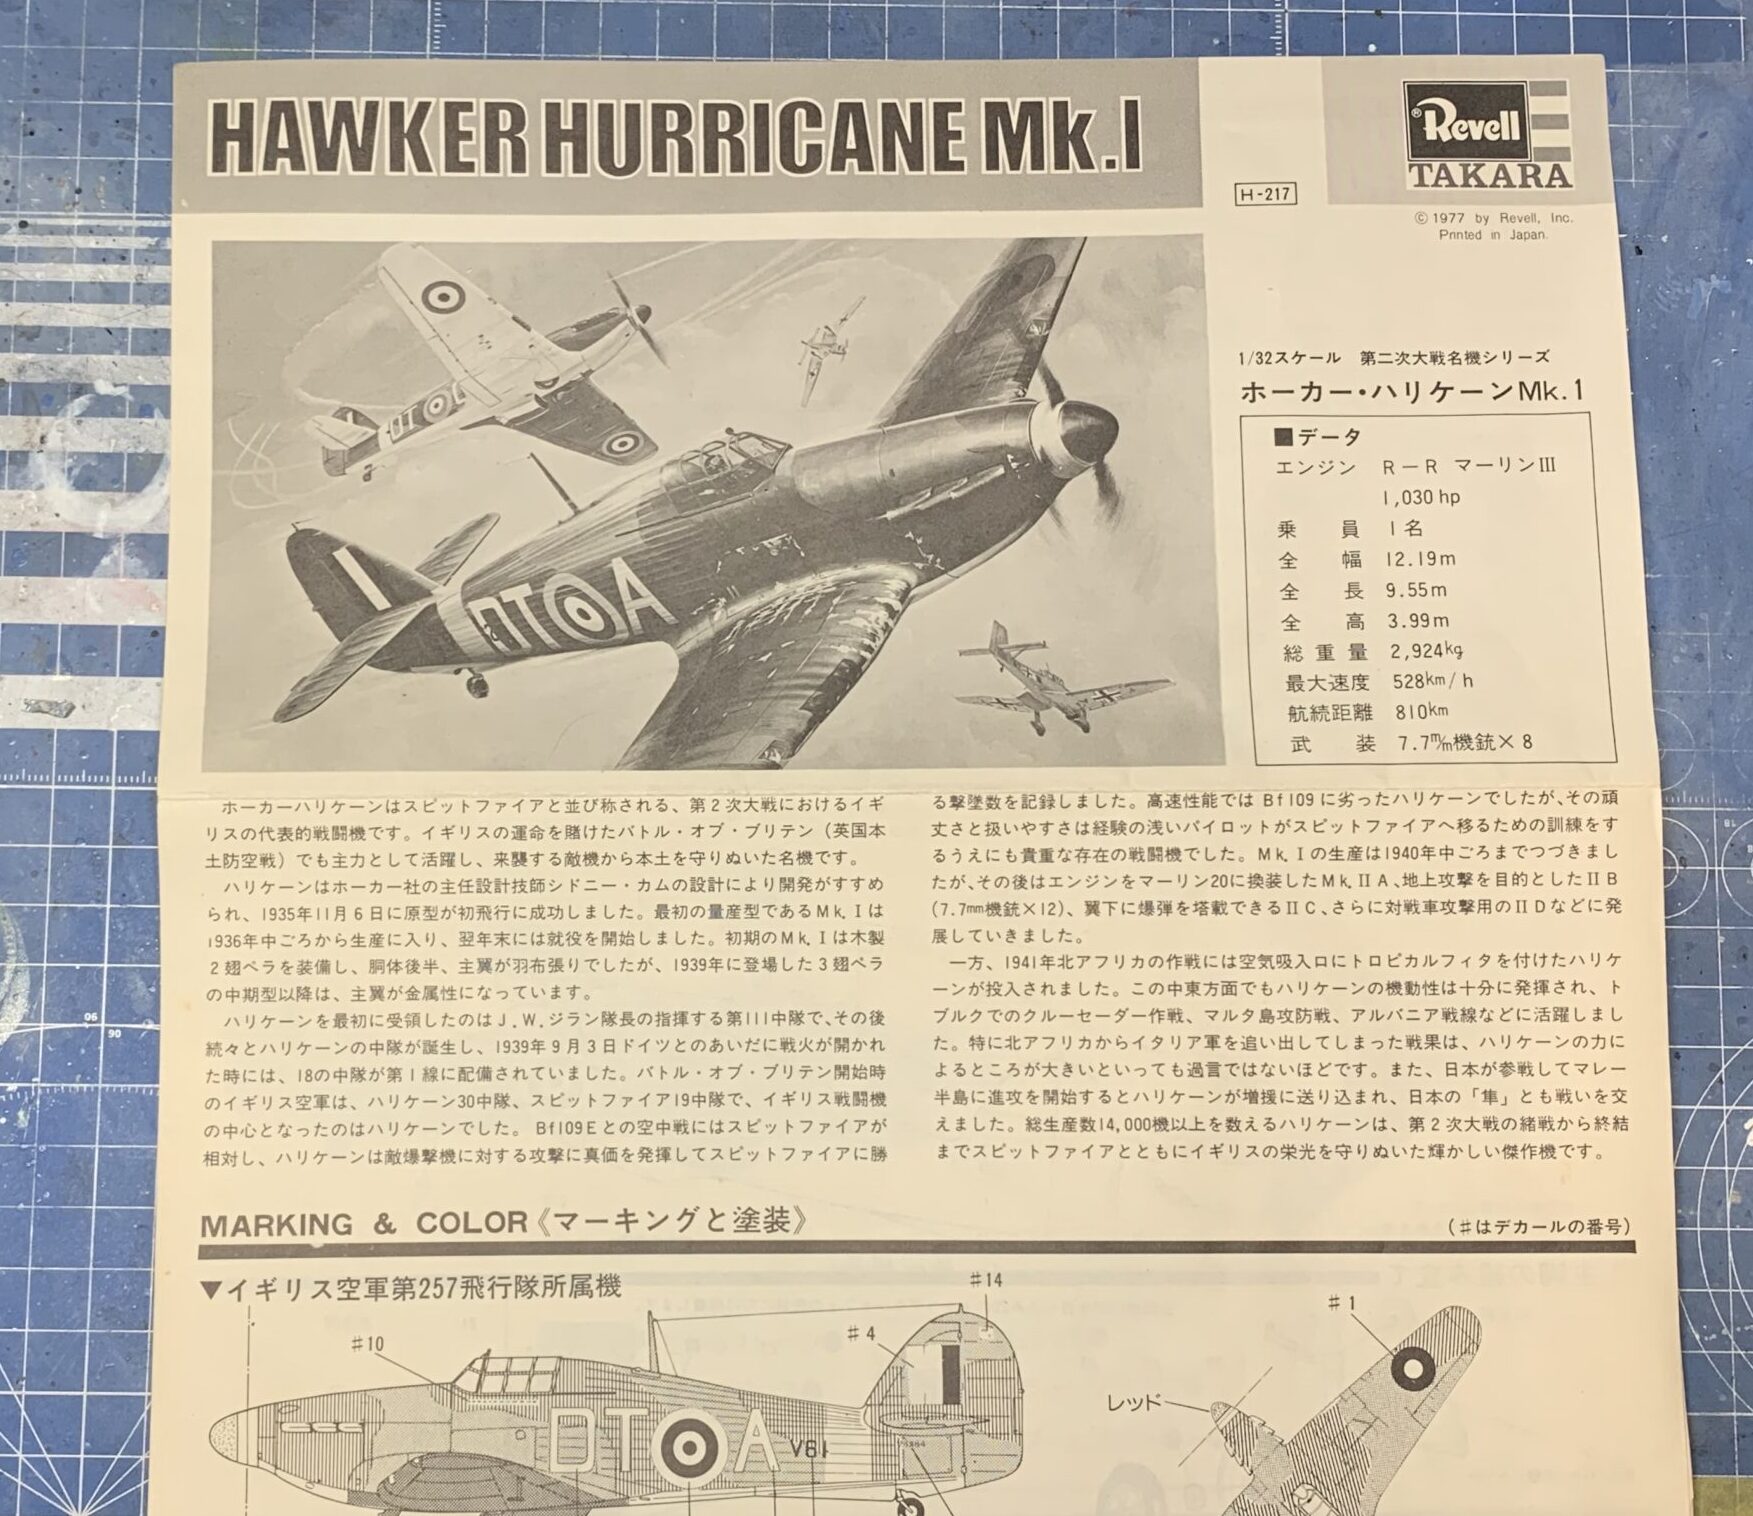 タミヤ 1/48 イタレリシリーズ No.11 ドイツ空軍 ホーカー ハリケーン Mk.I 人形3体付 プラモデル 37011